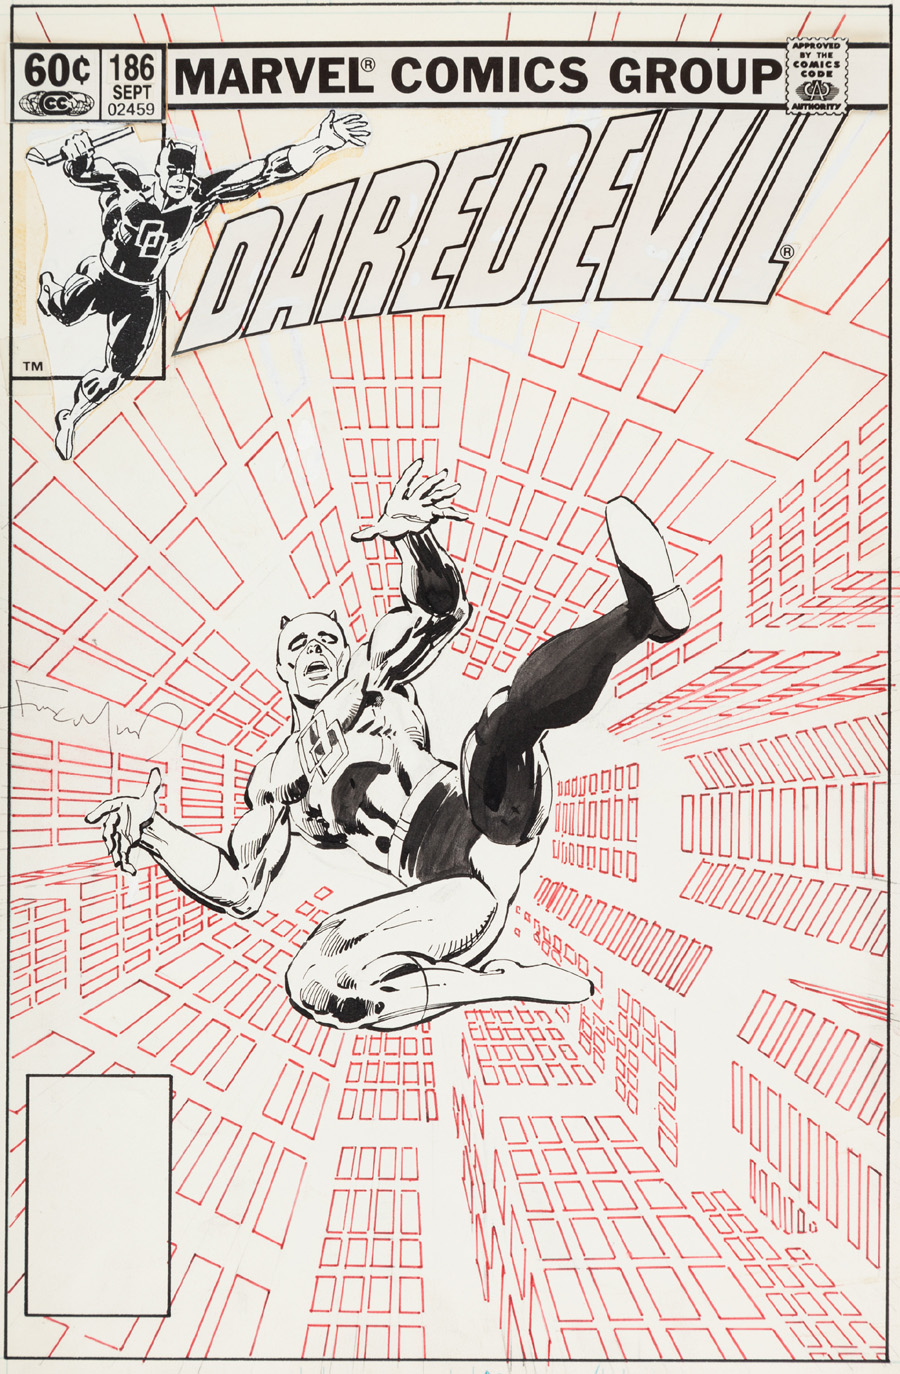 Cover art for “Daredevil” #186, September 1982